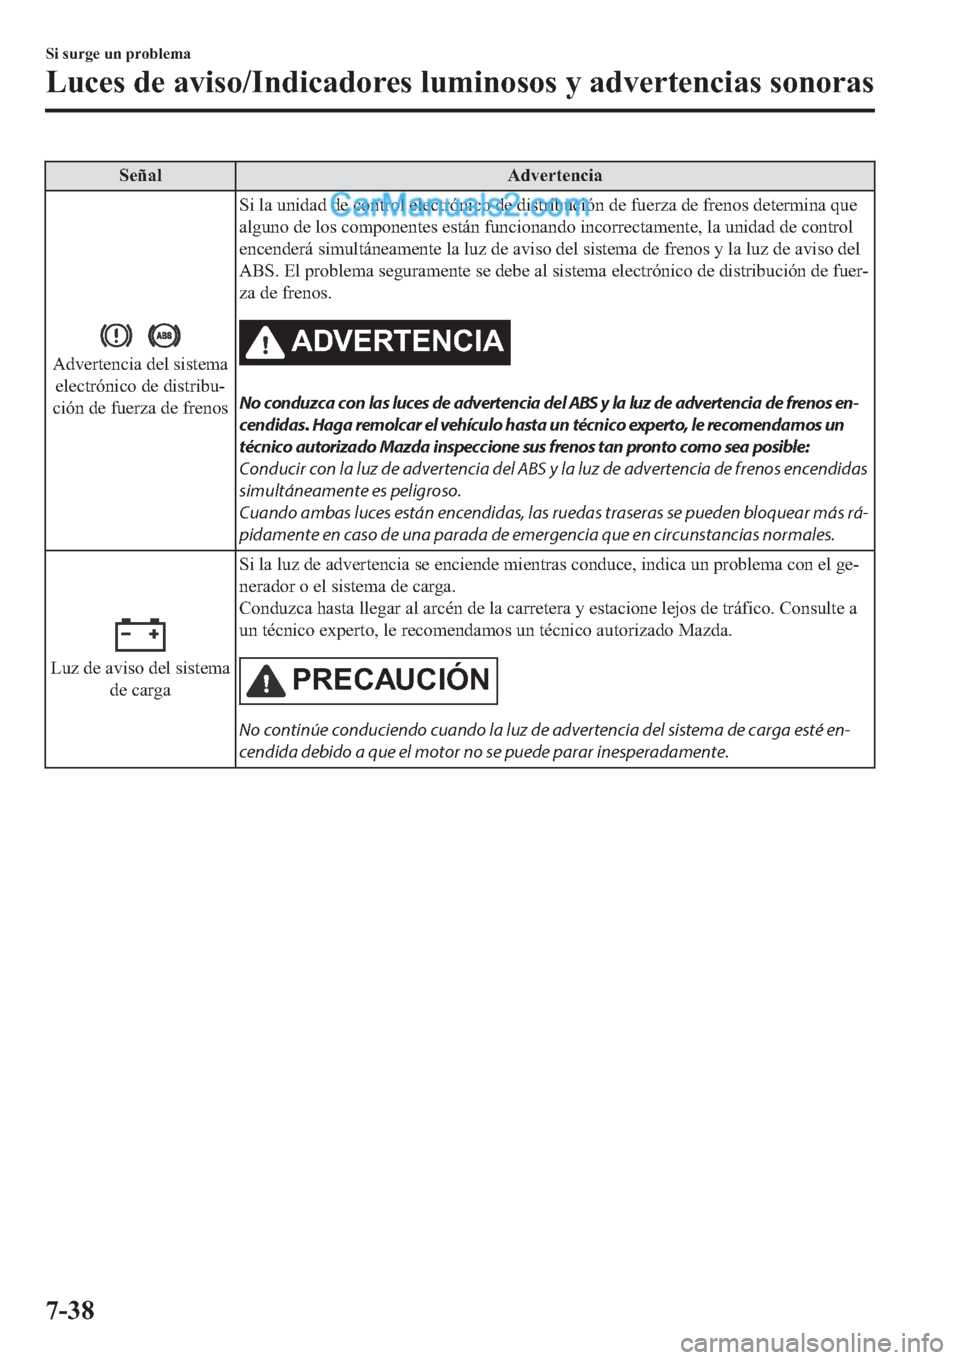 MAZDA MODEL 2 2019  Manual del propietario (in Spanish) �6�H�x�D�O �$�G�Y�H�U�W�H�Q�F�L�D
�$�G�Y�H�U�W�H�Q�F�L�D��G�H�O��V�L�V�W�H�P�D
�H�O�H�F�W�U�y�Q�L�F�R��G�H��G�L�V�W�U�L�E�X(
�F�L�y�Q��G�H��I�X�H�U�]�D��G�H��I�U�H�Q�R�V�6�L��O�D��X�Q�L�G�D